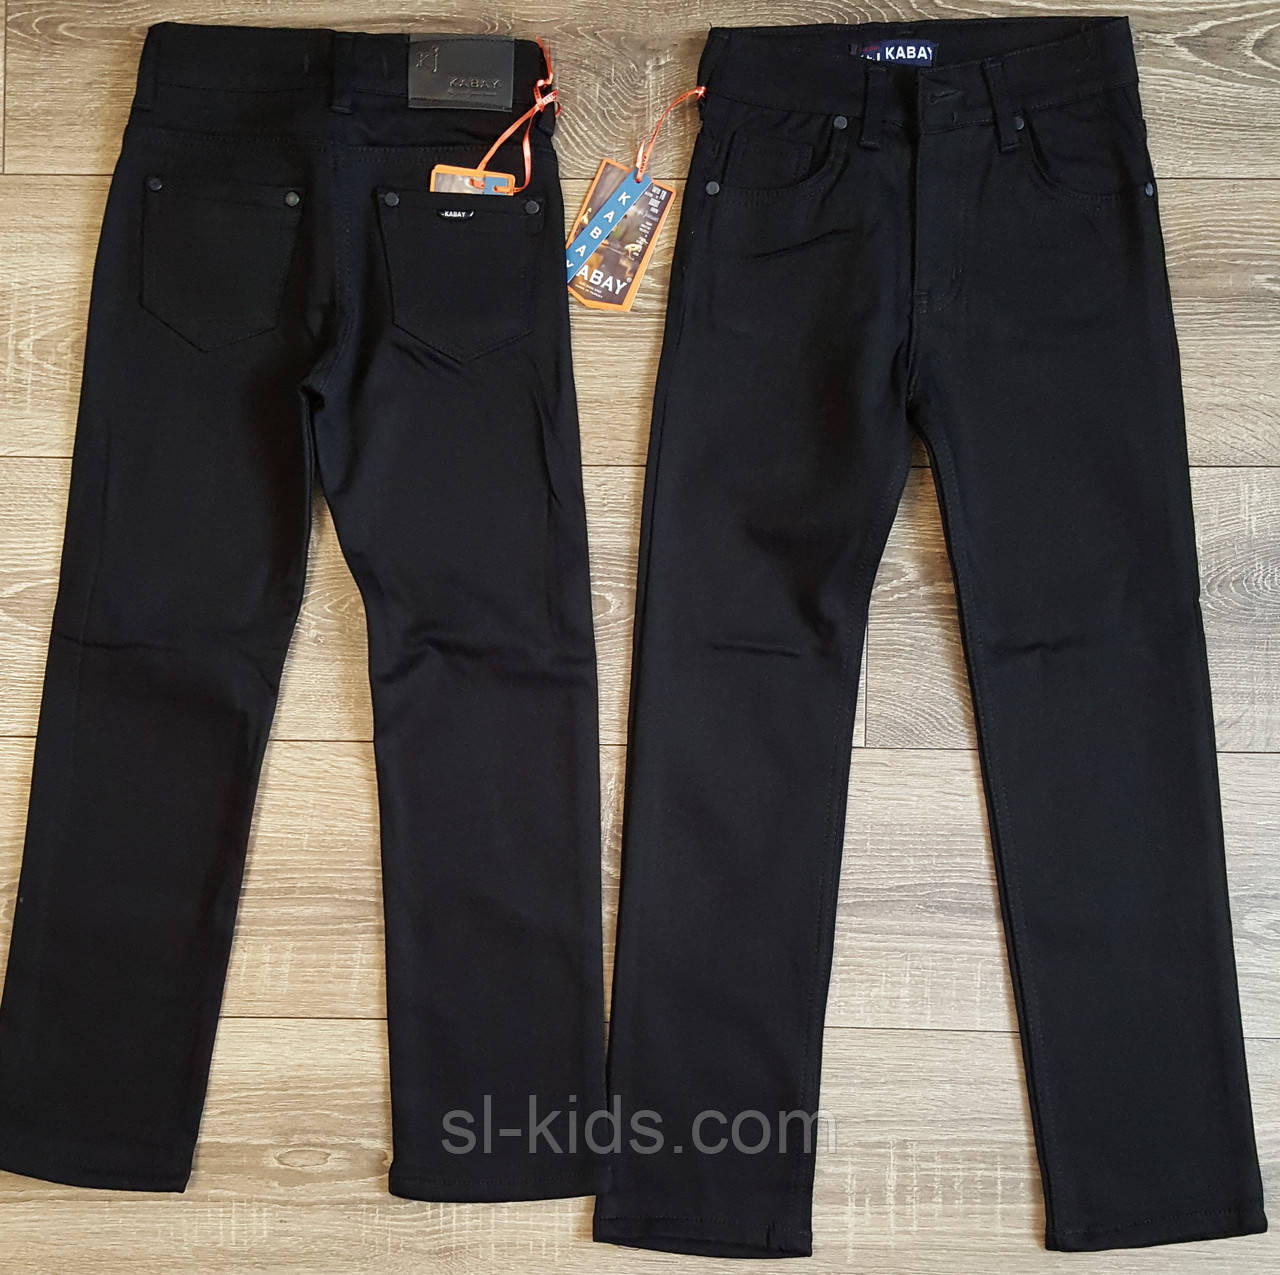 Штани,джинси на флісі для хлопчика 110-116 см(Kabay)(чорні) пр. Туреччина, фото 1